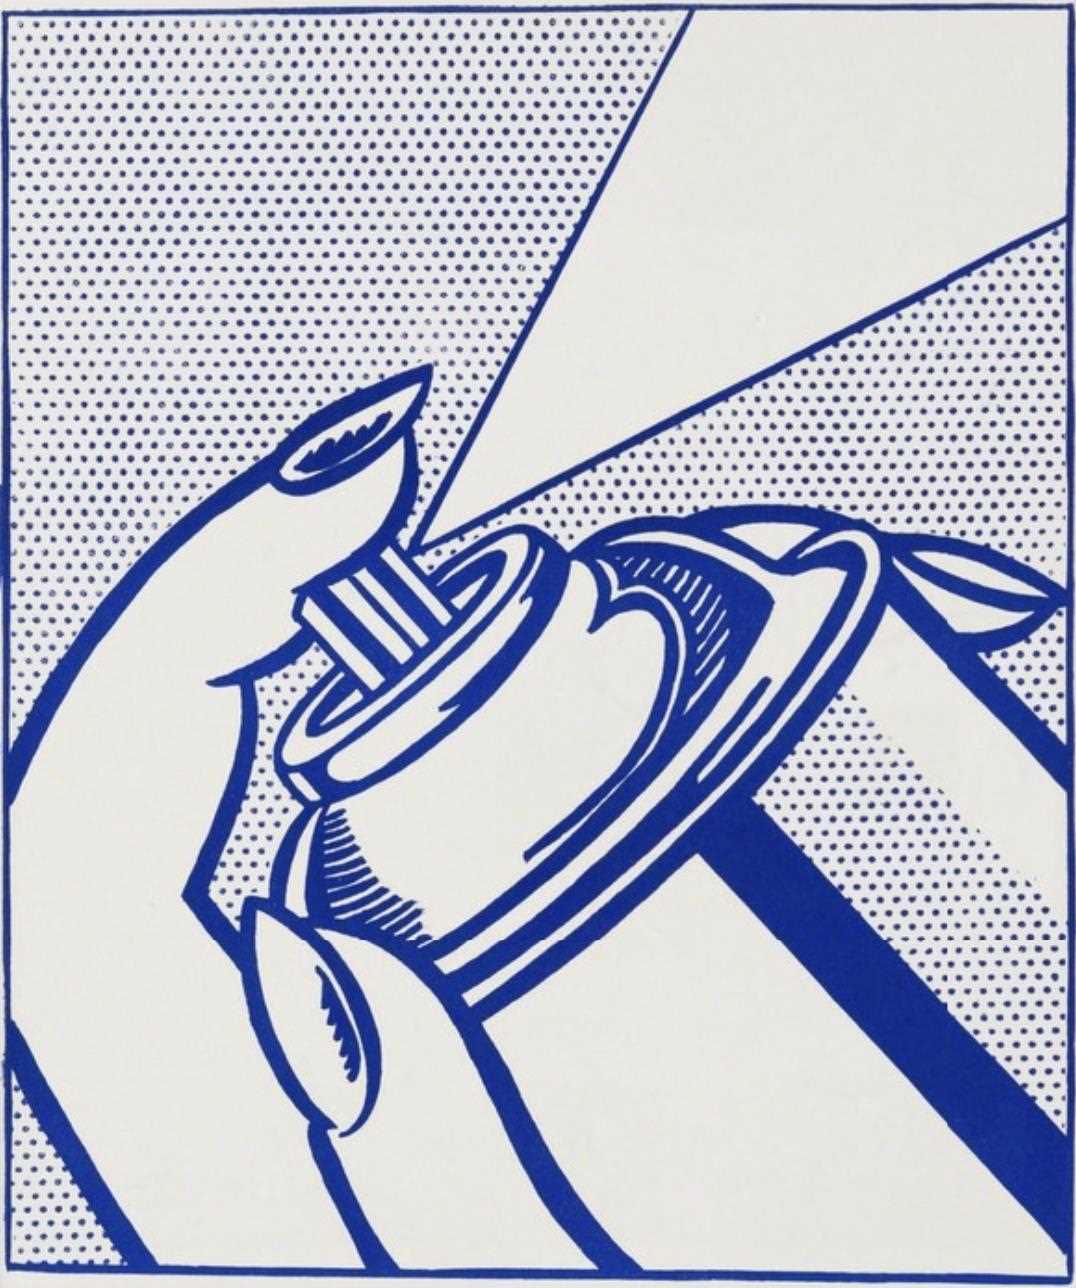 Lot 187 - Roy Lichtenstein (American 1923-1997), Spray Can, 1964